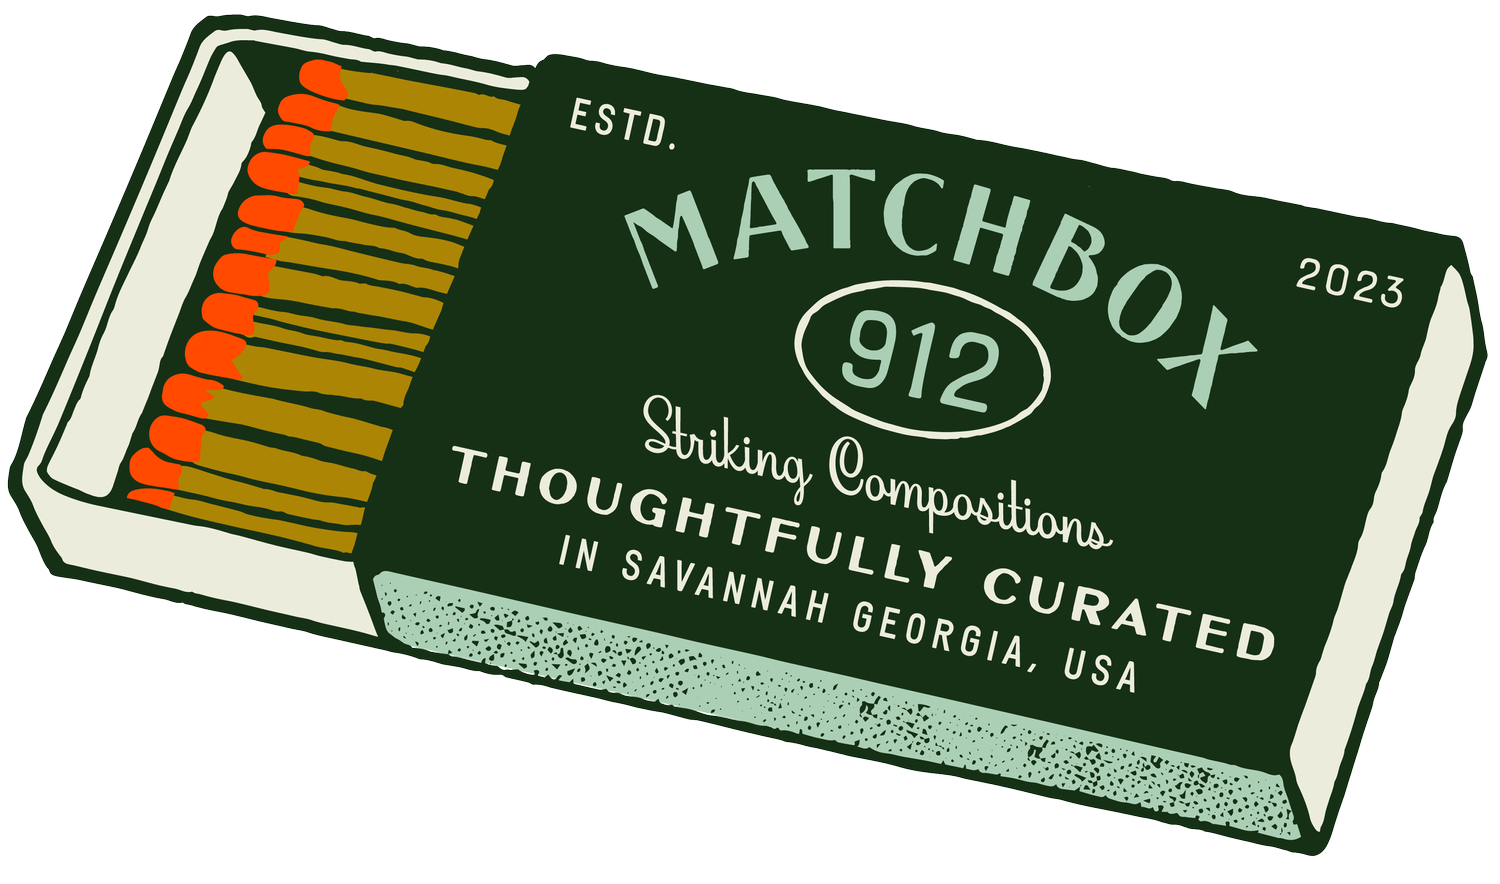 Matchbox 912